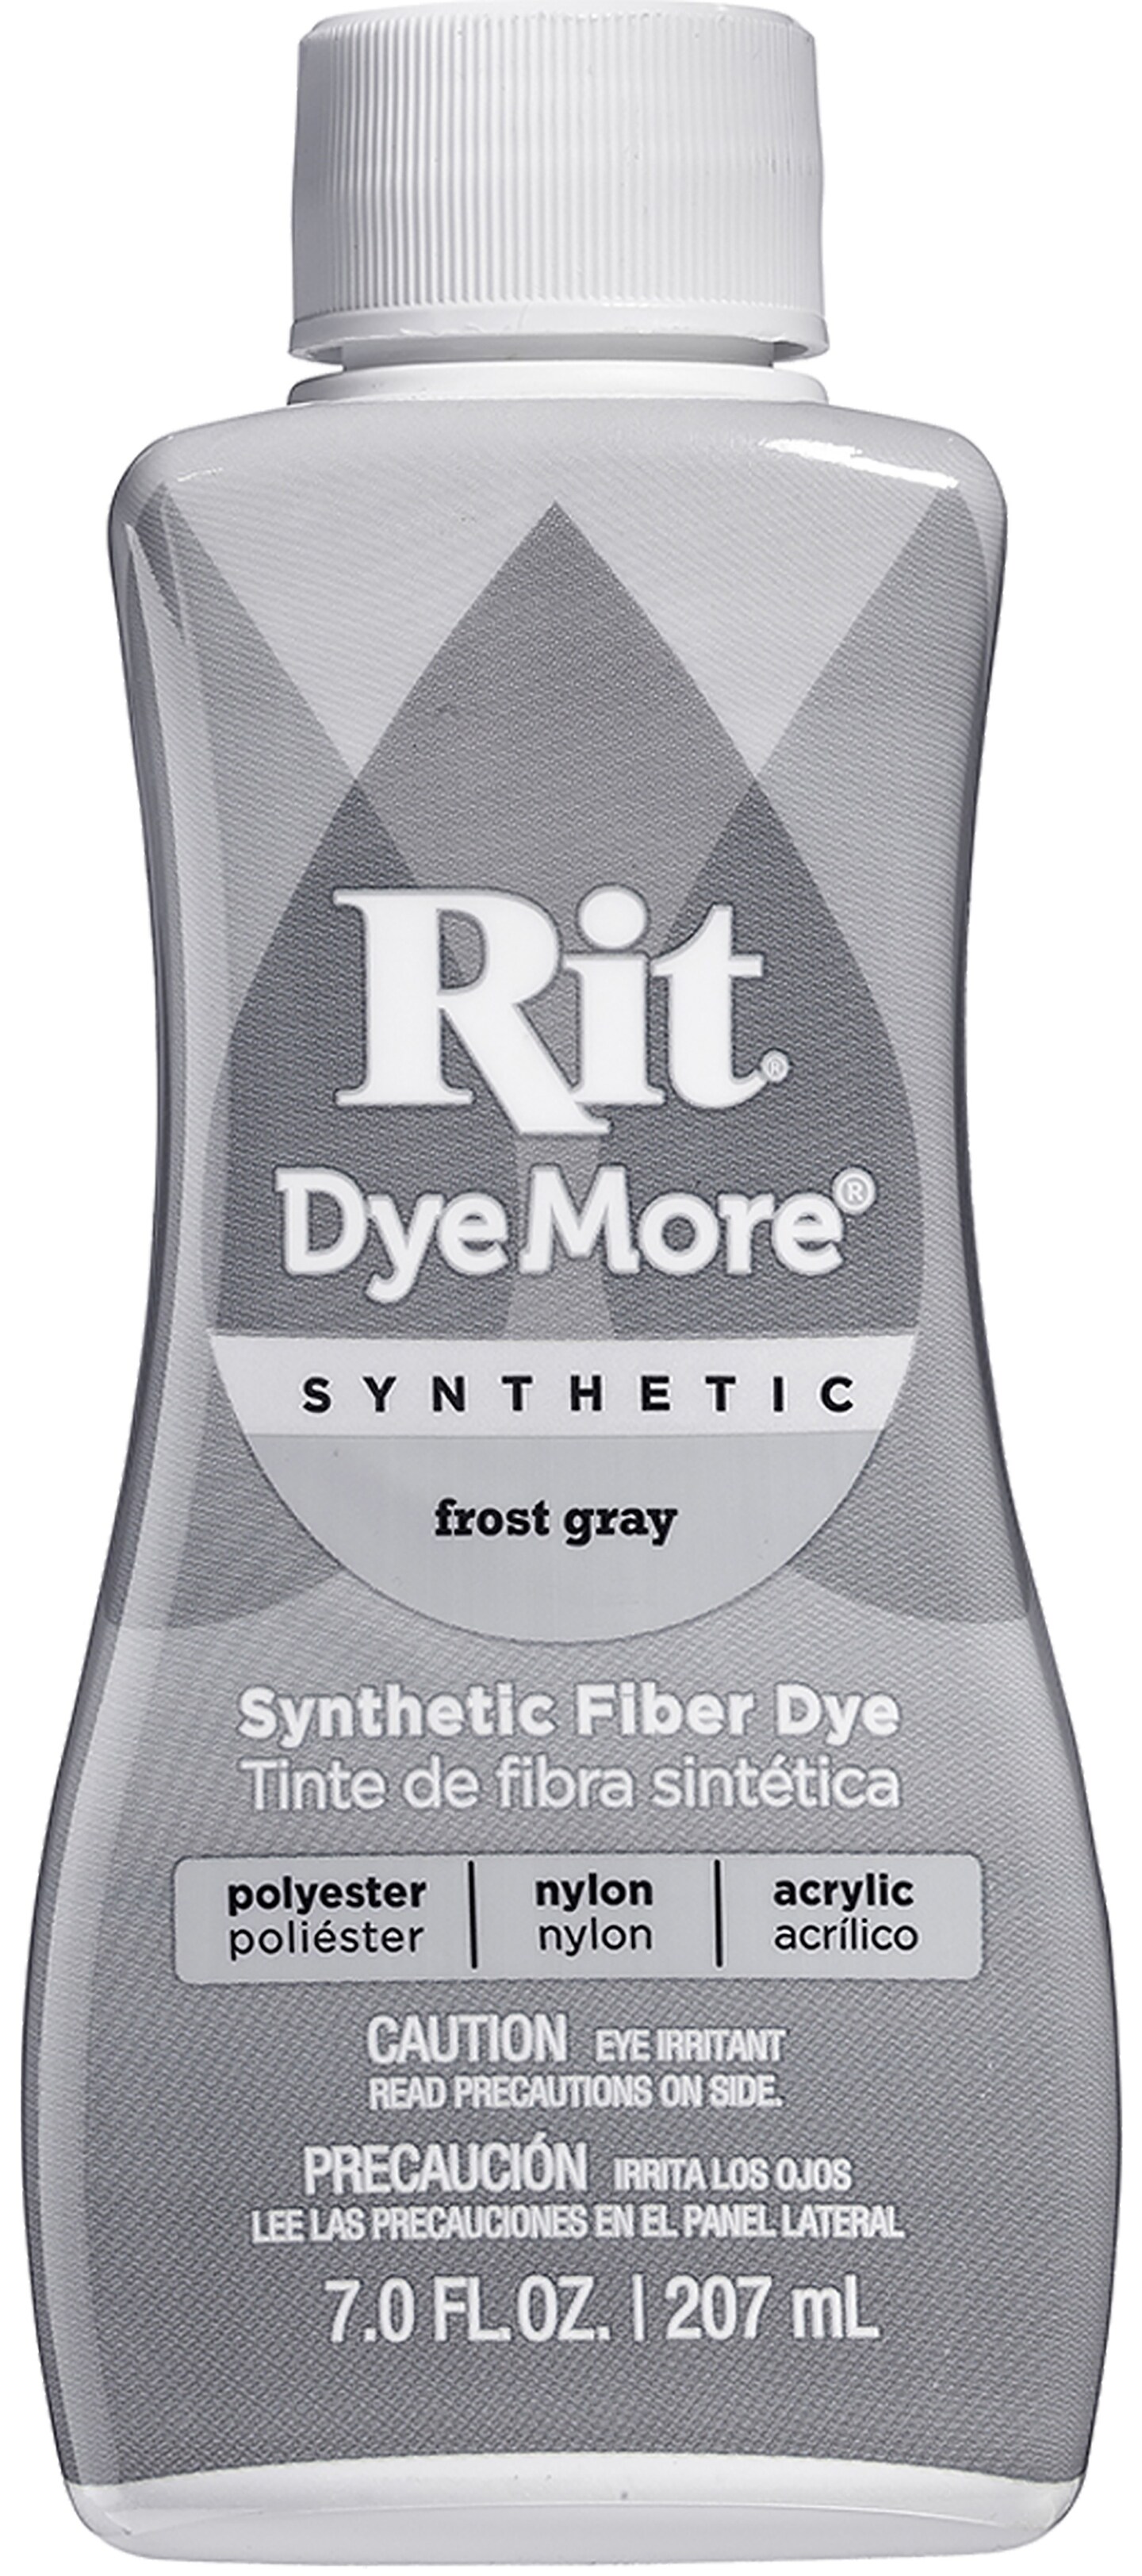 Rit Dye More Synthetic 7oz